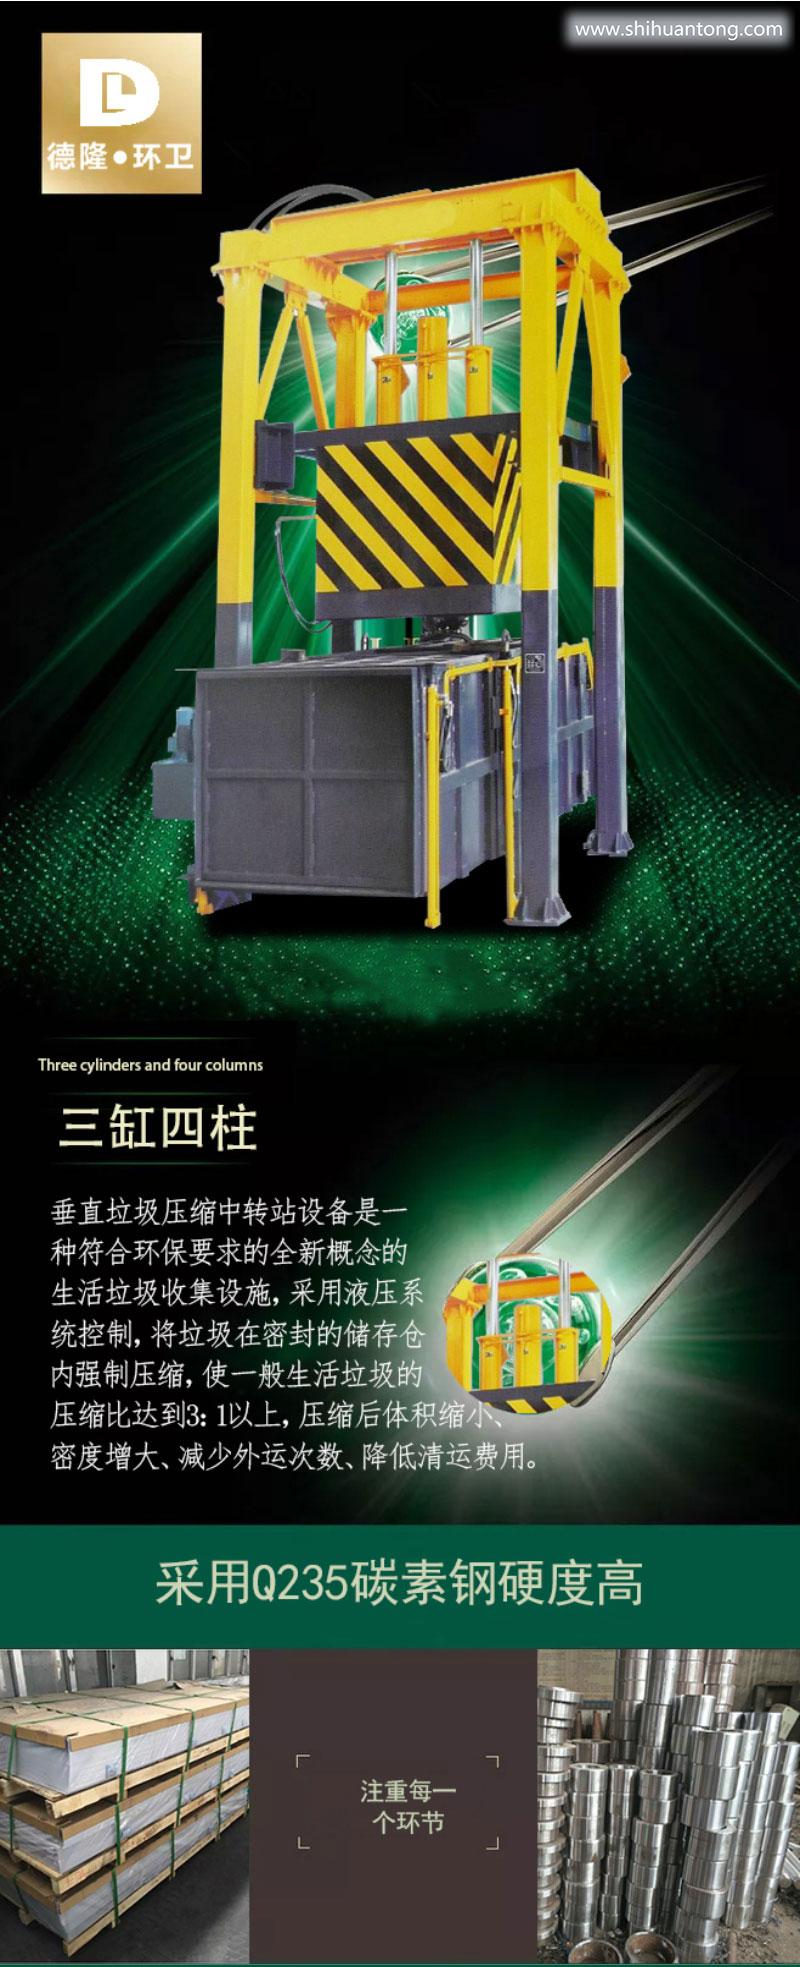 垂直垃圾压缩机 垂直侧翻式垃圾处理站 三缸四柱垃圾中转站